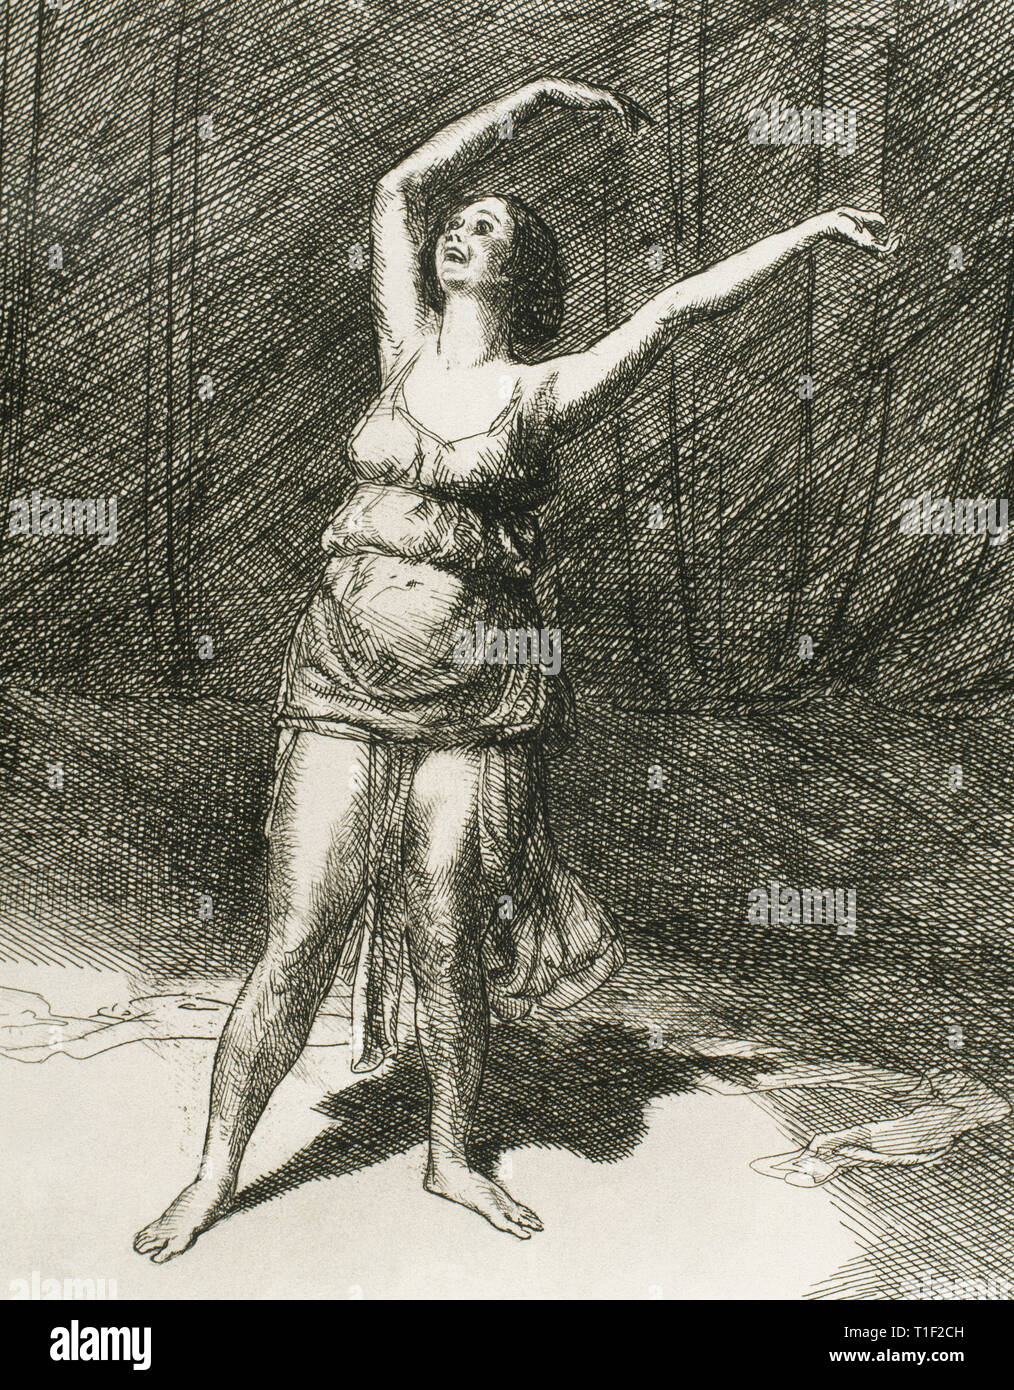 (Angela Isadora Duncan Isadora Duncan) (1877-1927). Die amerikanische Tänzerin. Isadora Duncan Tanz. Radierung von John Sloan (1871-1951), 1915. Stockfoto